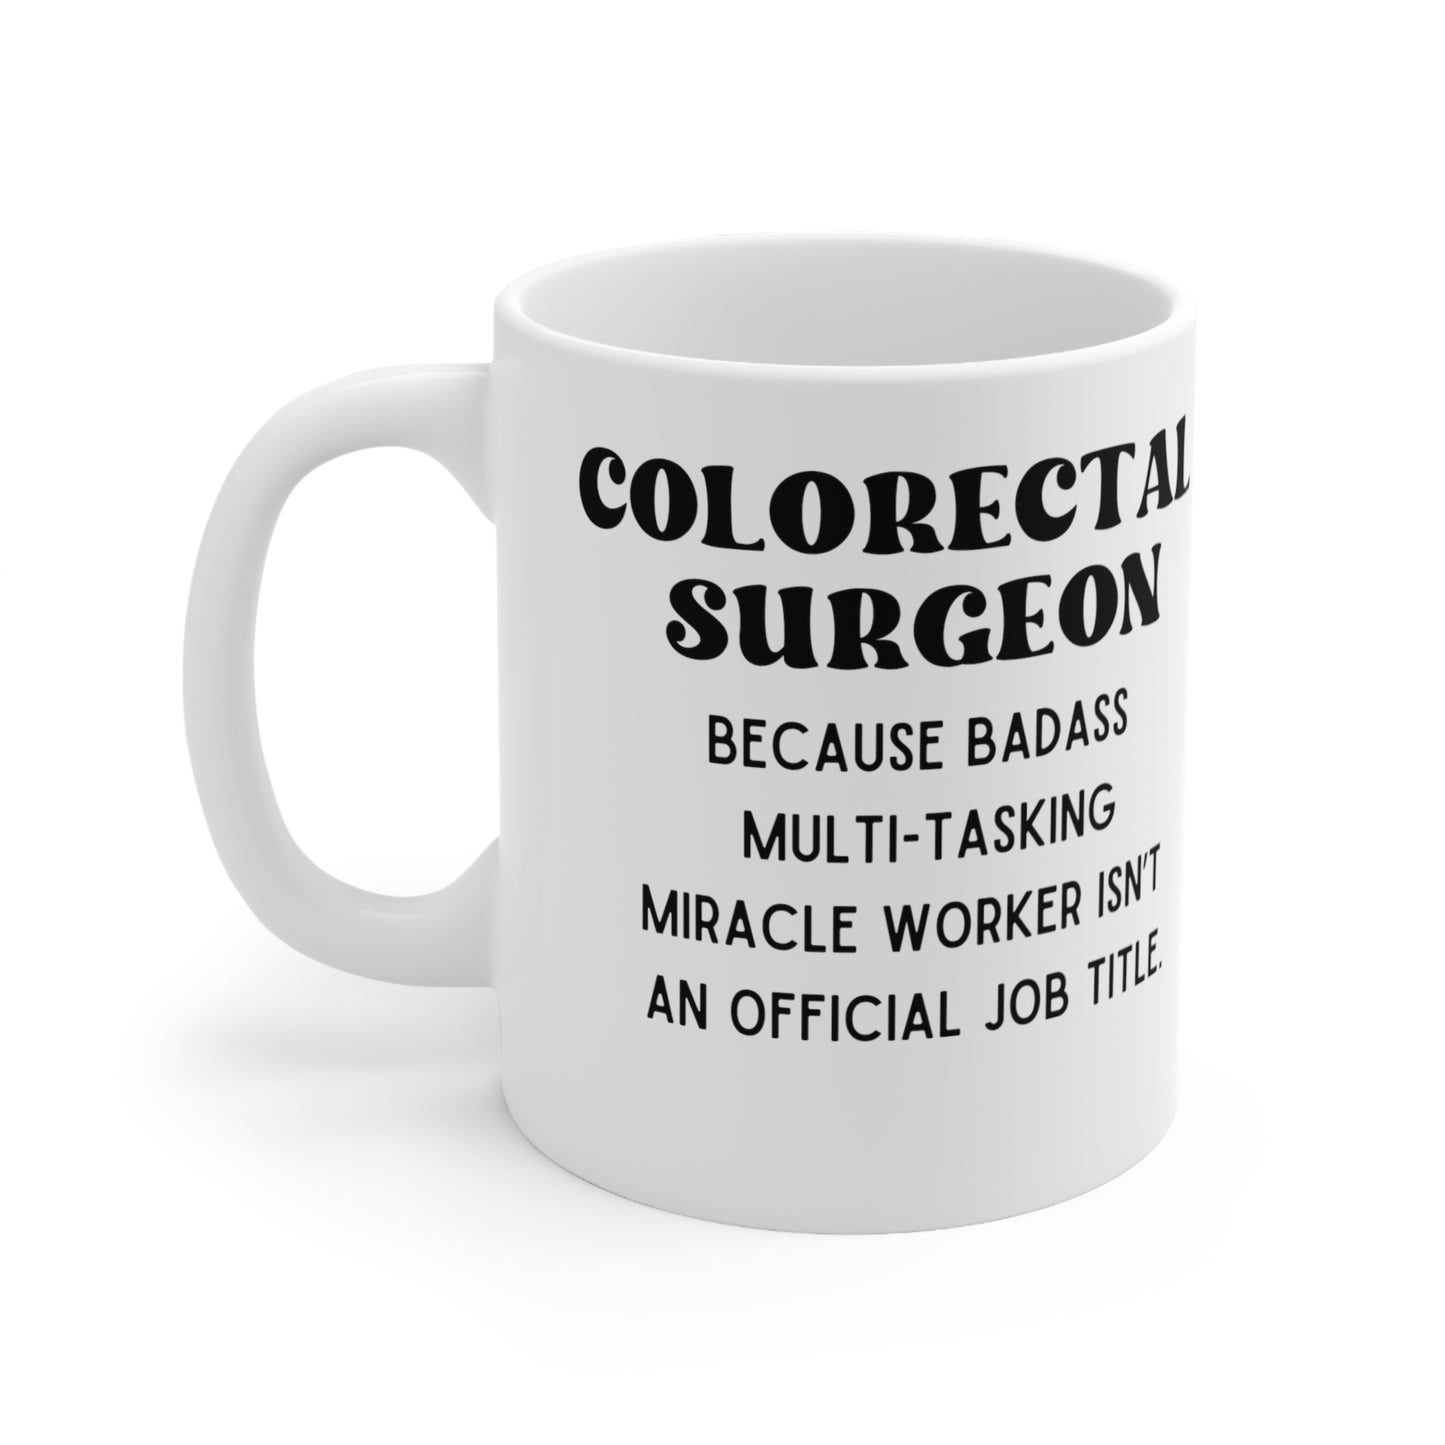 Colorectal Surgeon Mug, Coffee Mug Gift Coffee, Tea, Gifts 11oz